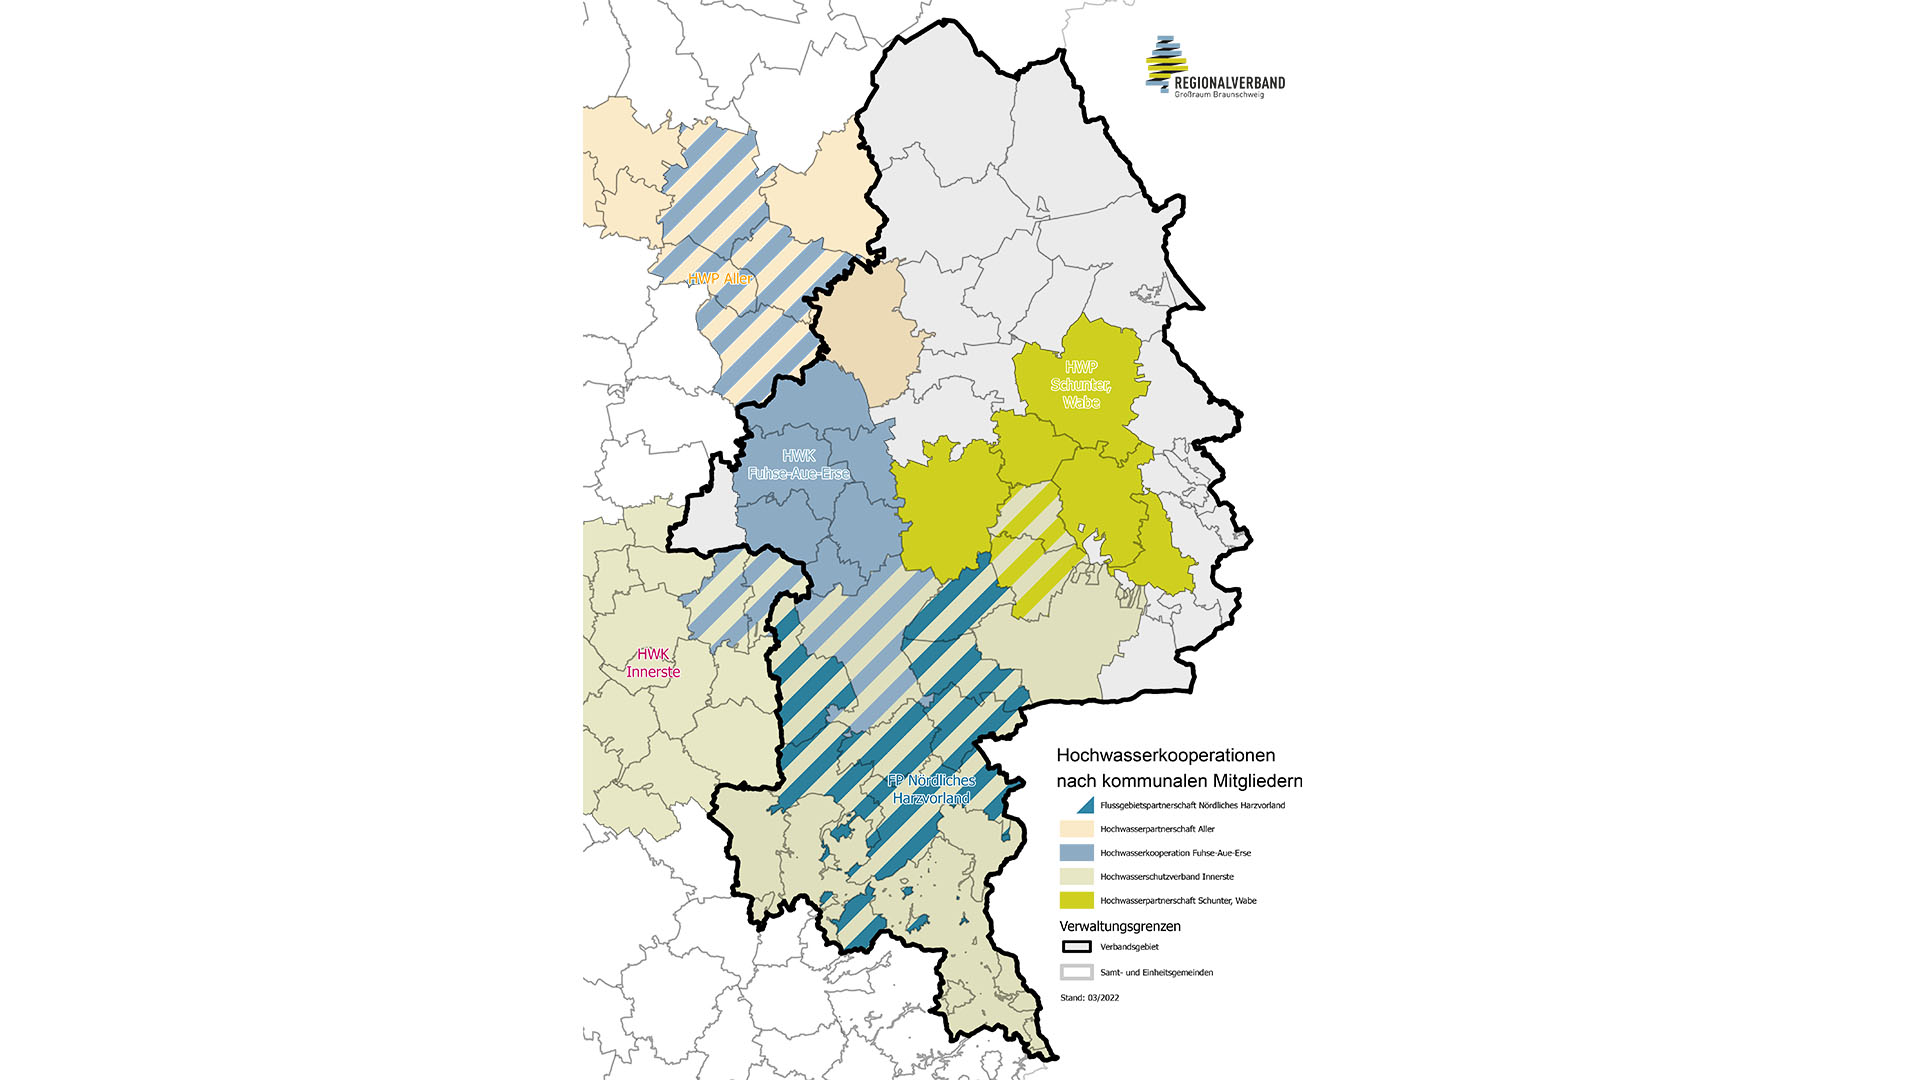 Eine Karte der Region, in der die Hochwasserkooperationen nach kommunalen Mitgliedern eingezeichnet sind.